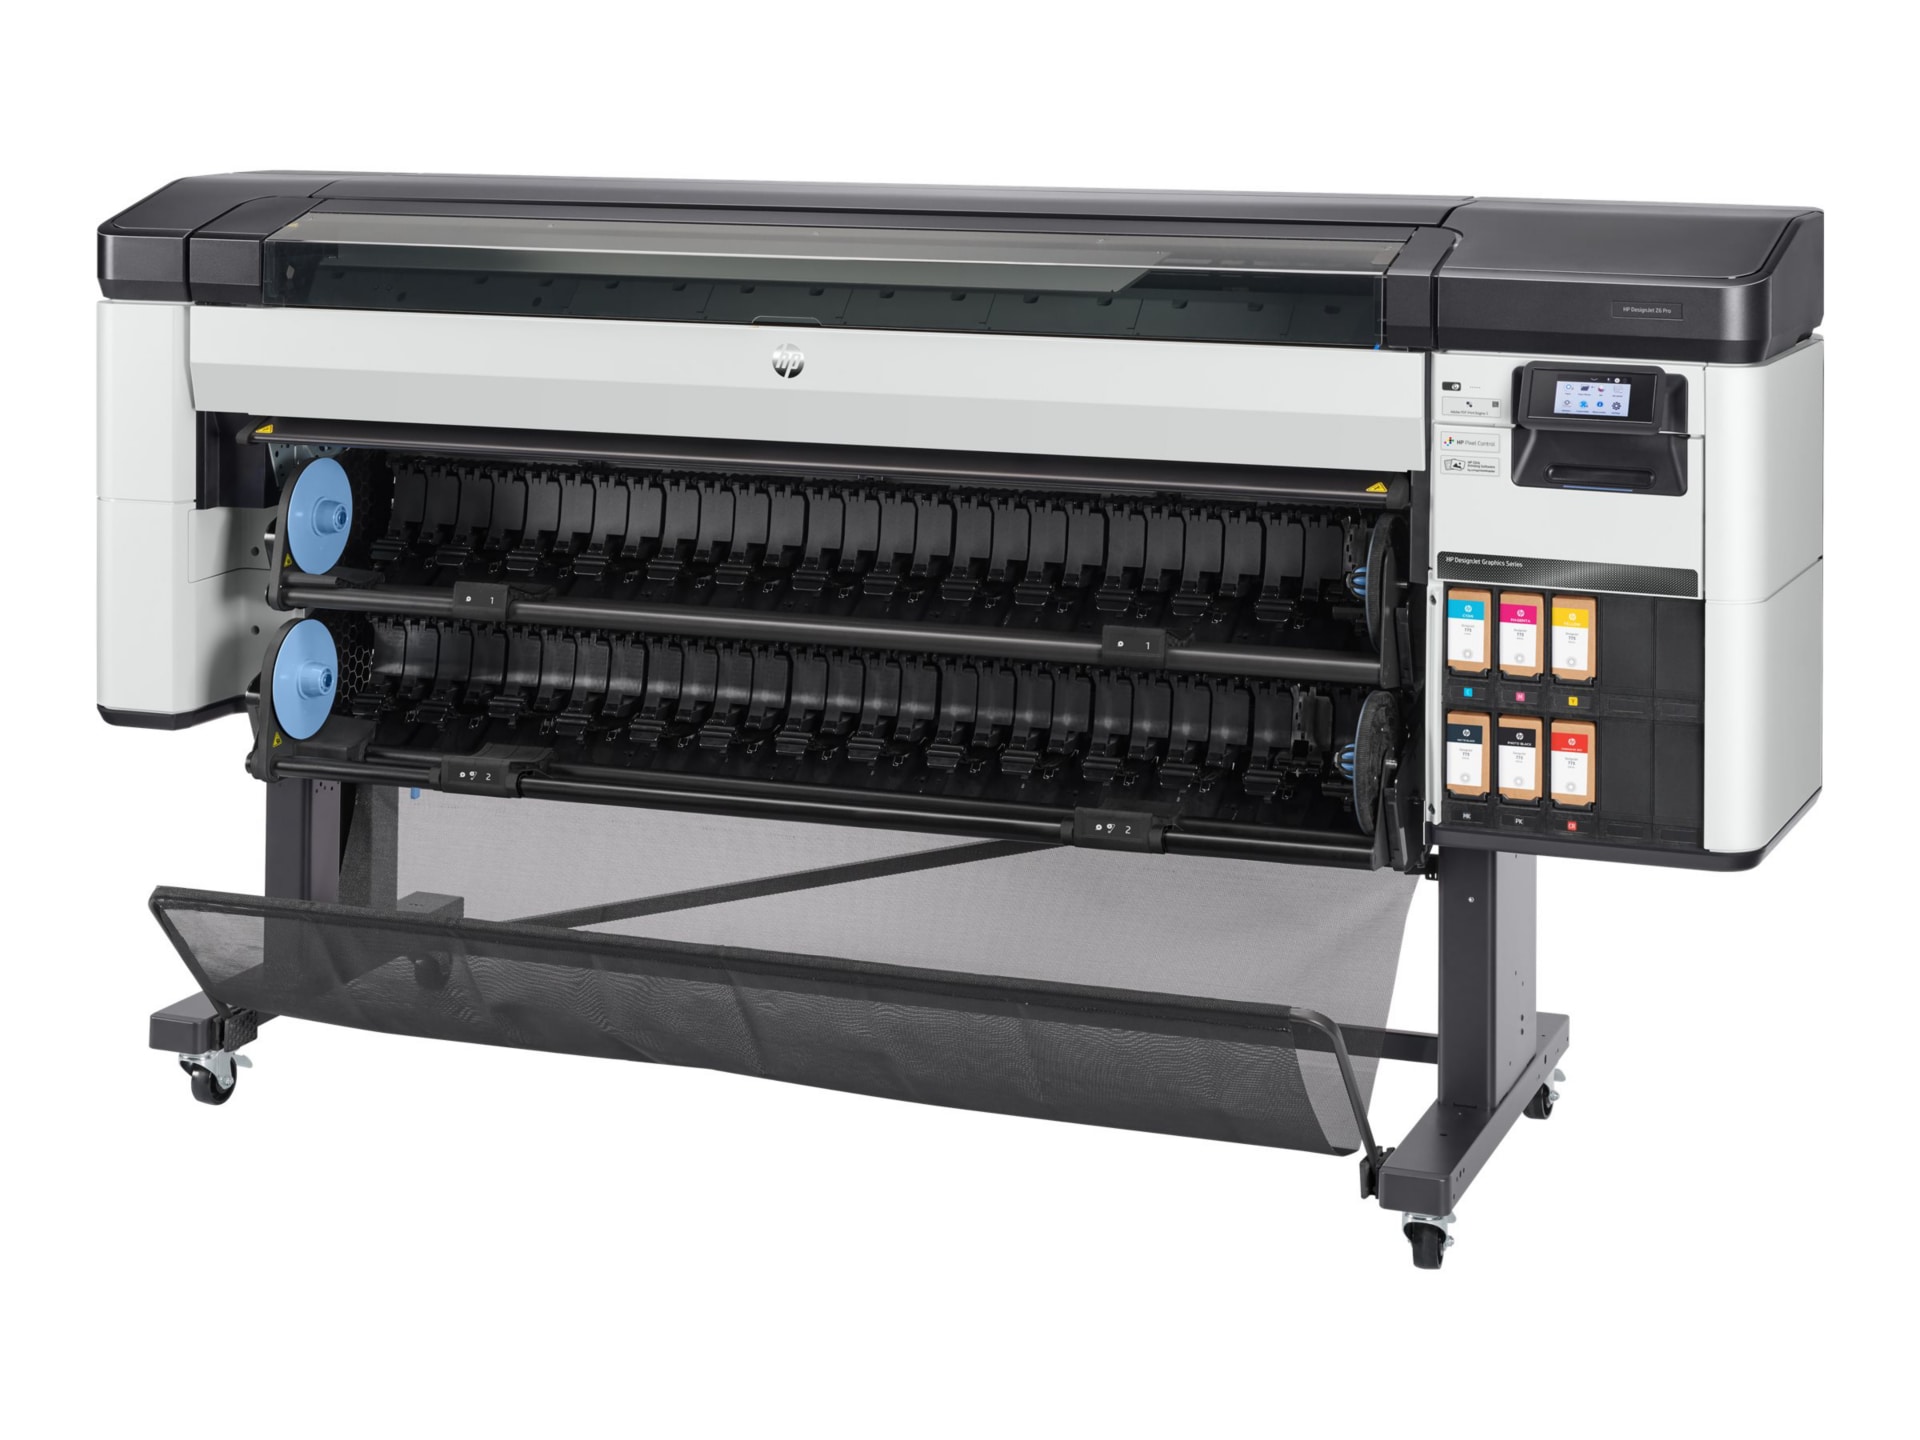 DesignJet Z6 Pro - printer - color - ink-jet - - Large Format & Plotter Printers - CDW.com